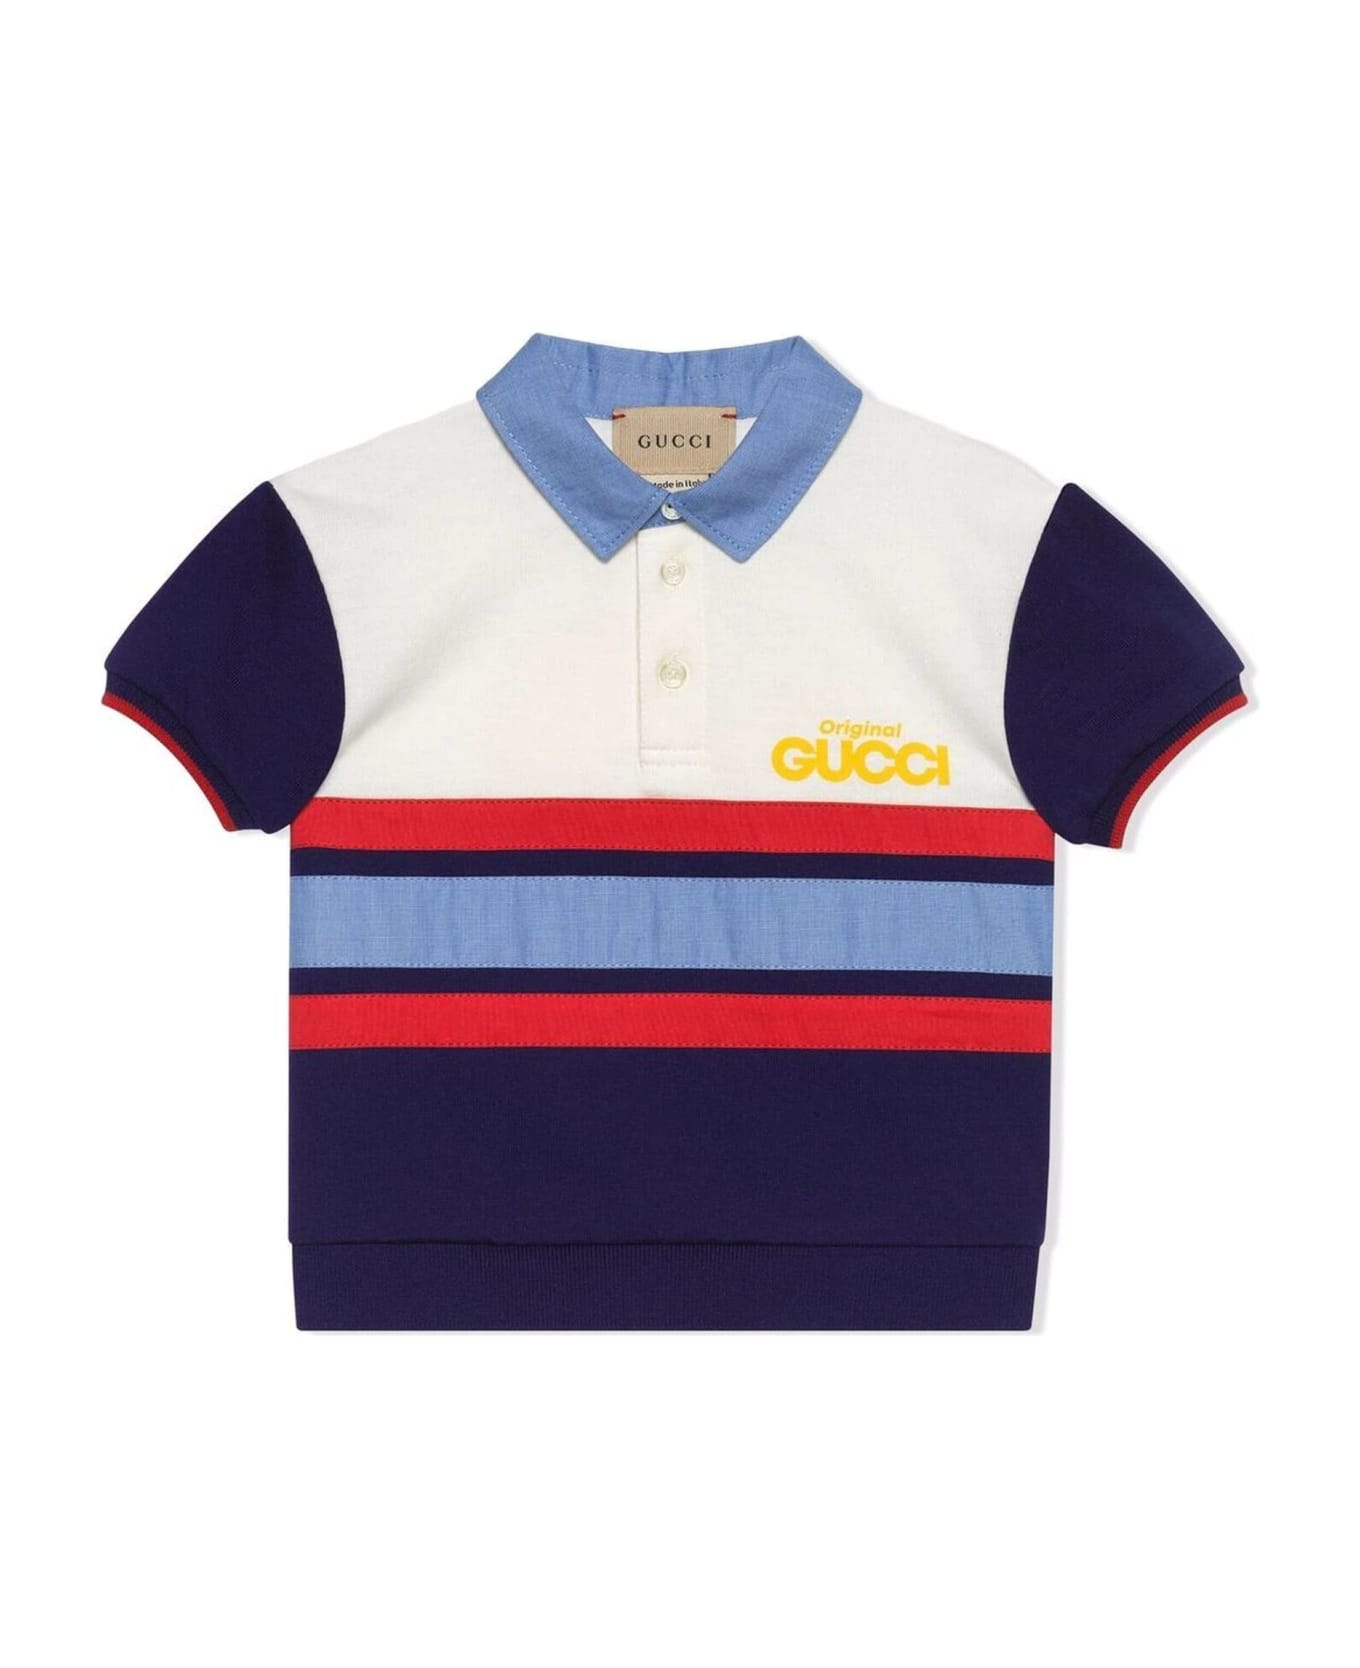 Gucci Blu Cotton Polo Shirt - Multicolor